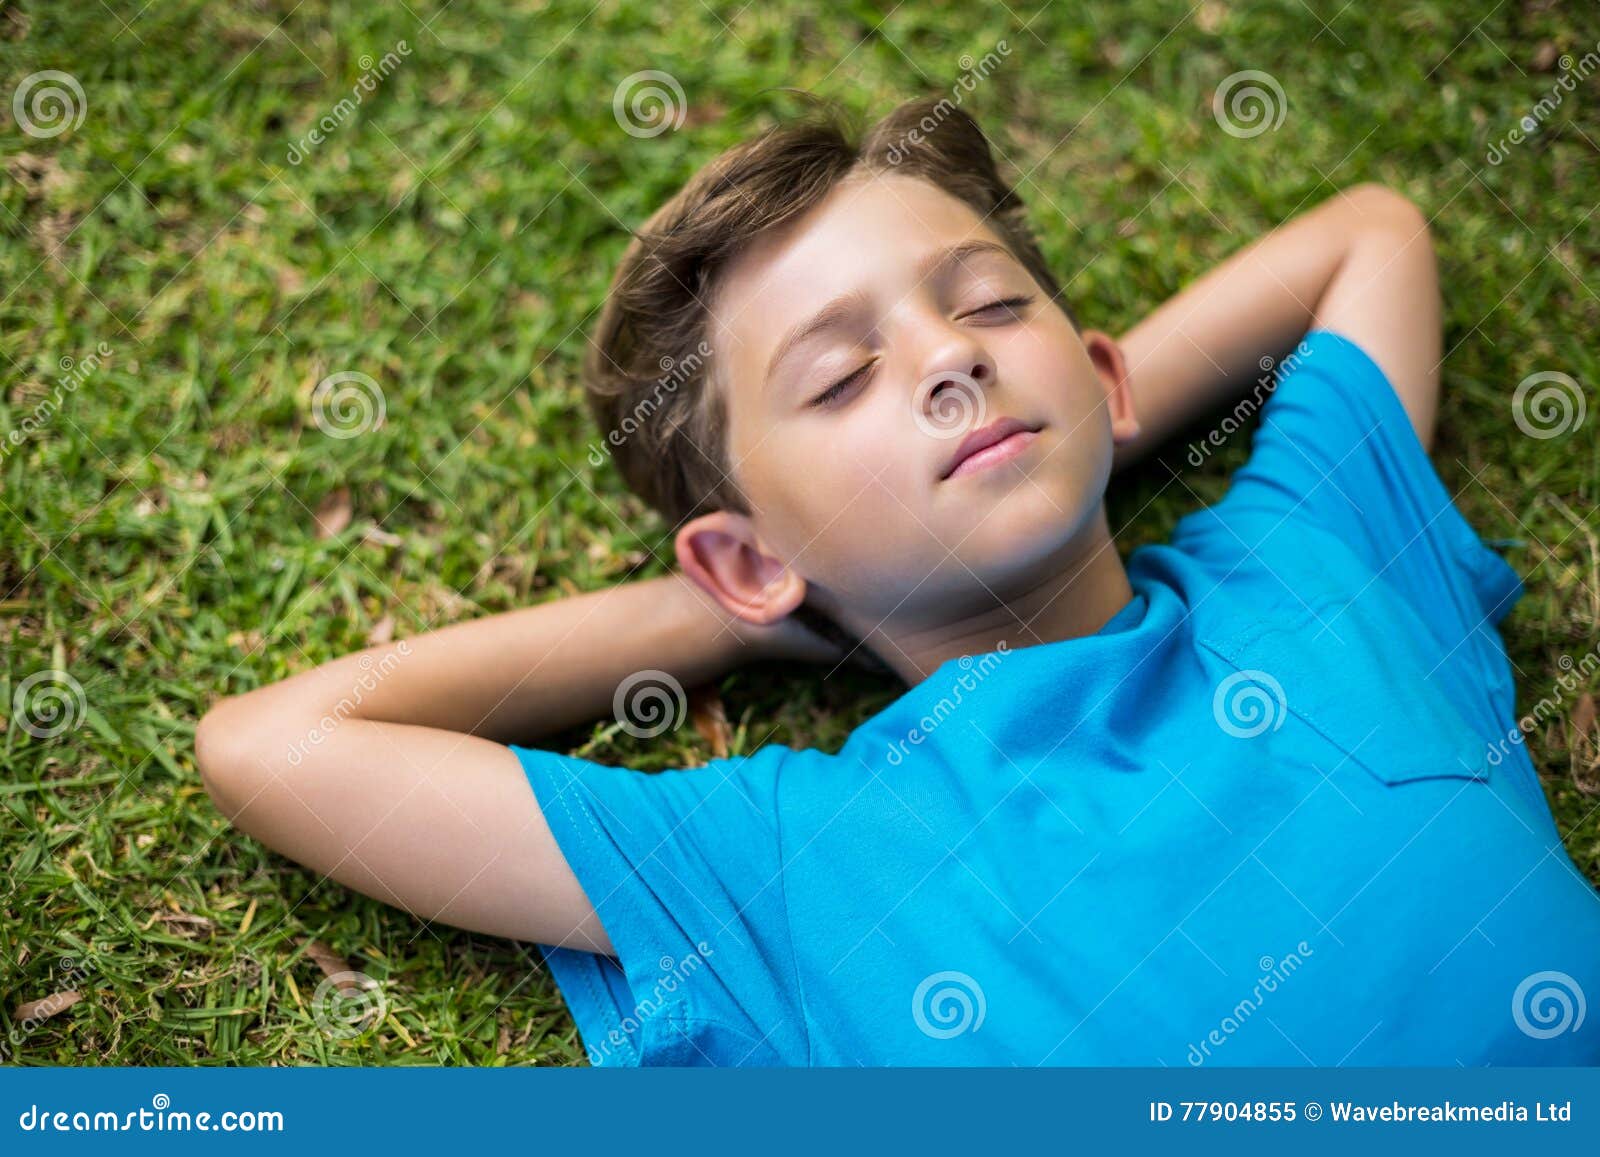 Молодые спящие мальчики. Спящий мальчик на траве. Мальчики спят в лагере.